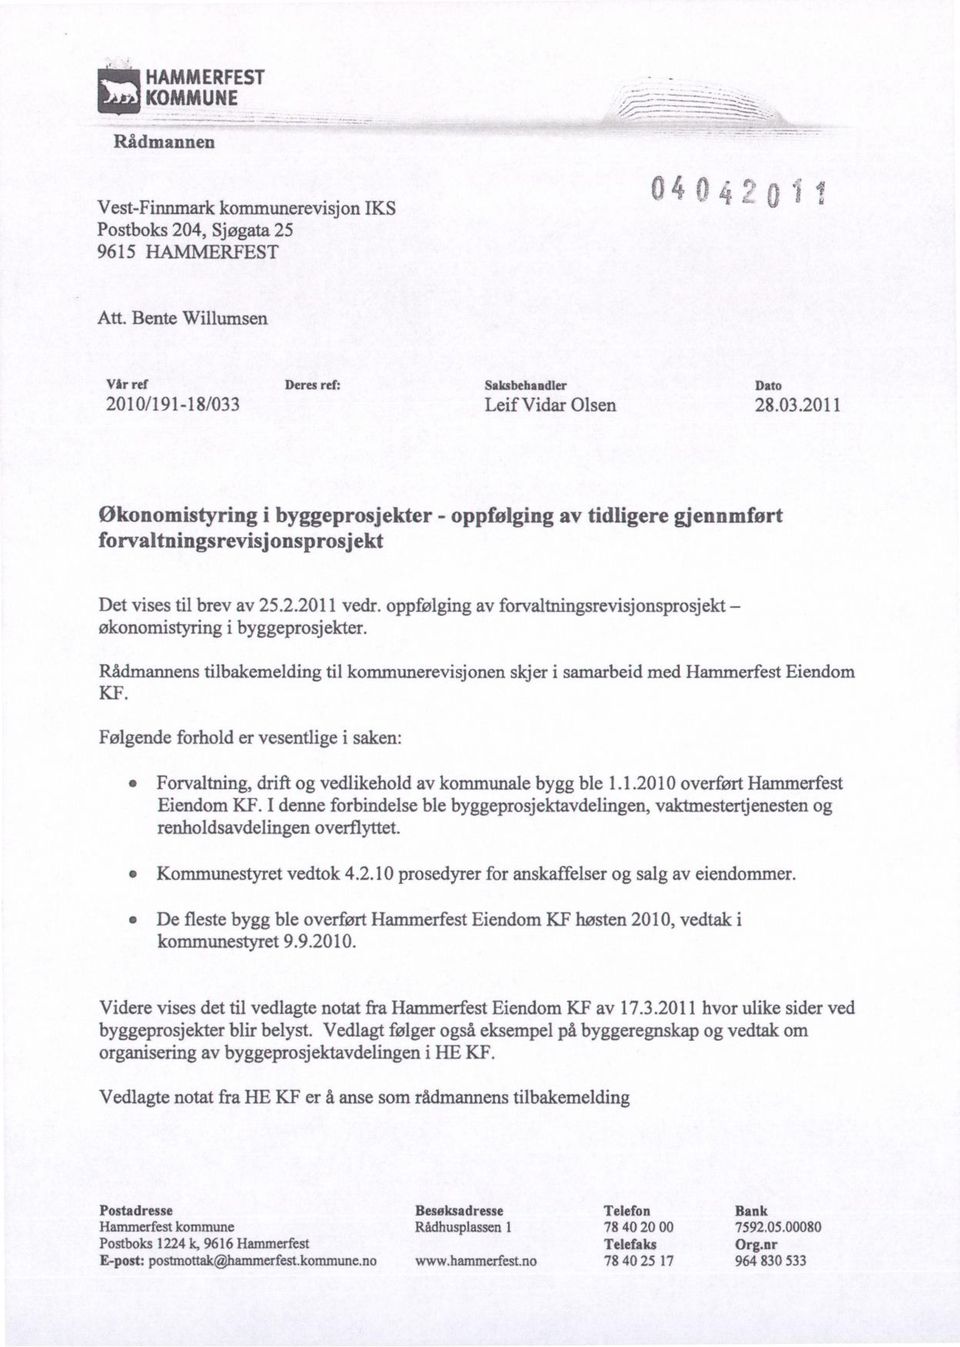 2.2011 vedr. oppfølging av forvaltningsrevisjonsprosjekt økonomistyring i byggeprosjekter. Rådmannens tilbakemelding til kommunerevisjonen skjer i samarbeid med Hammerfest Eiendom KF.